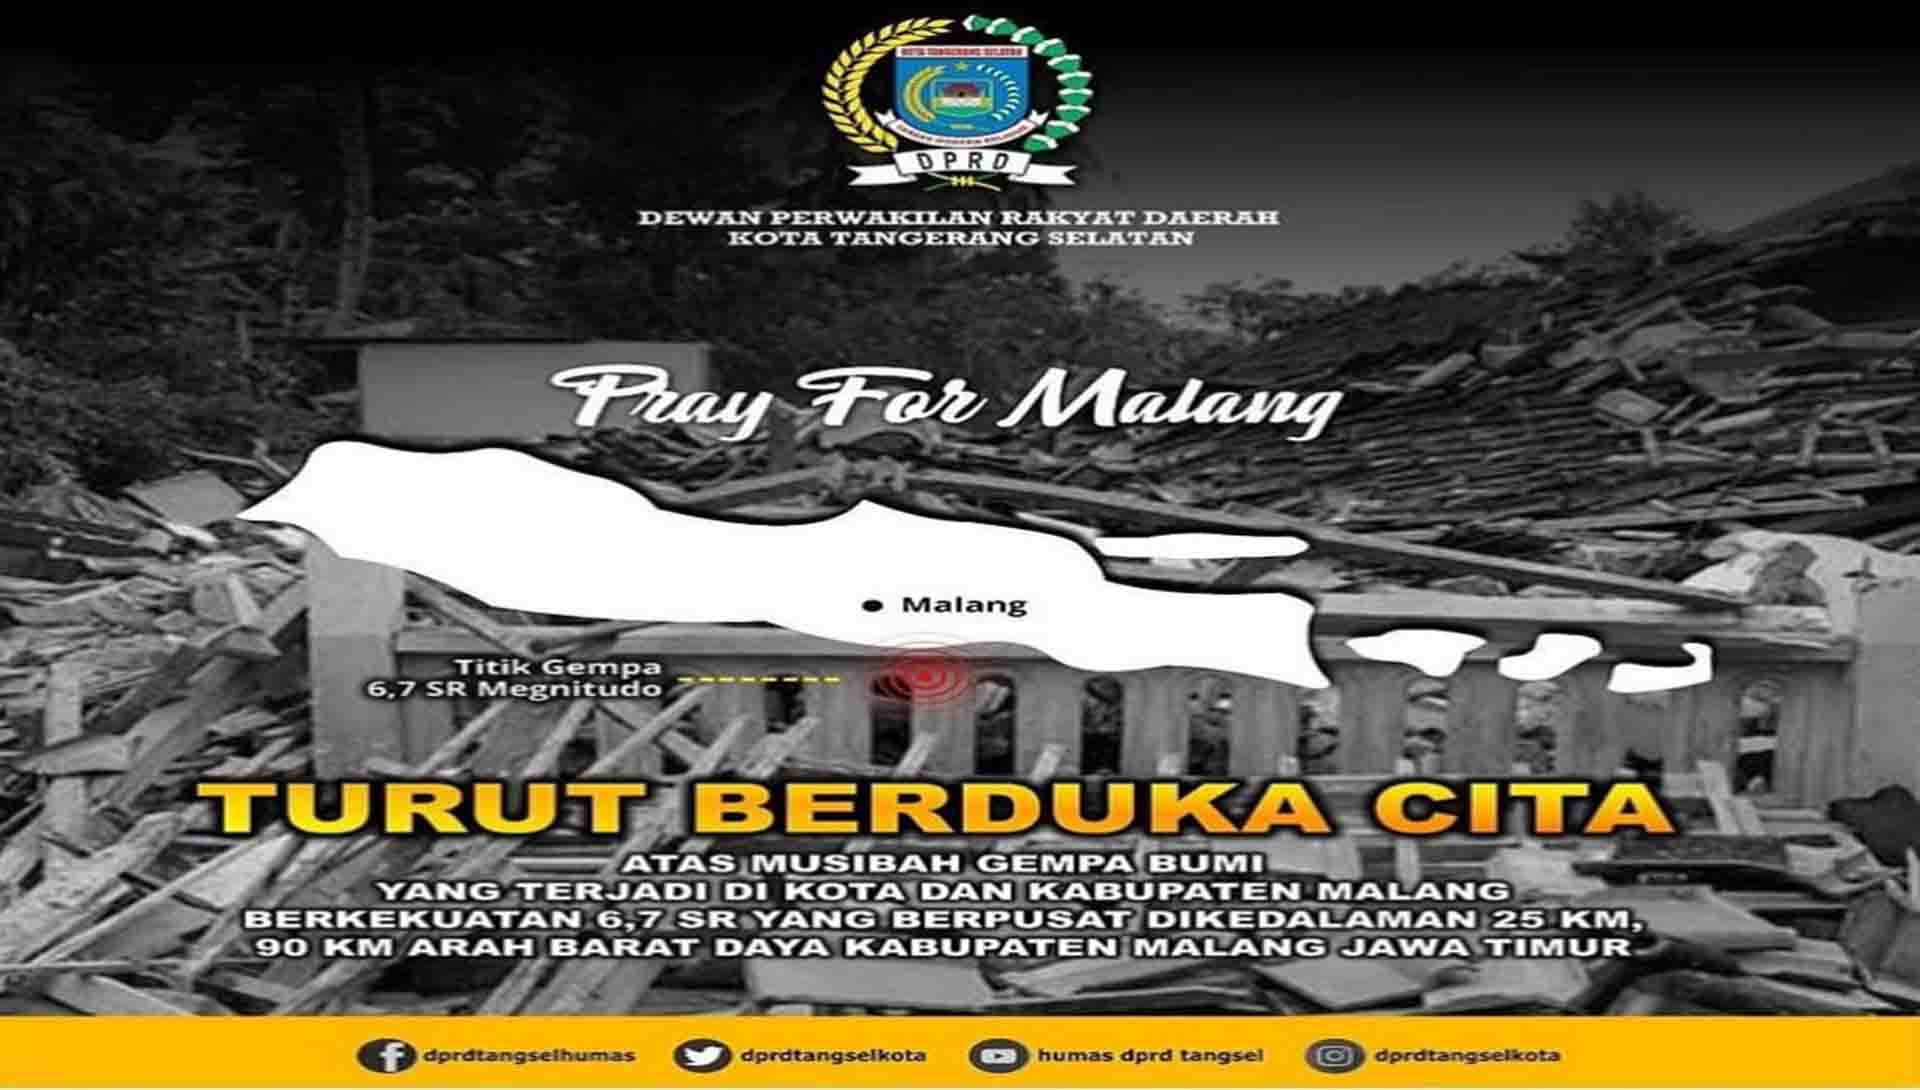 Turut berduka cita atas musibah Gempa Bumi di Kota & Kabupaten Malang